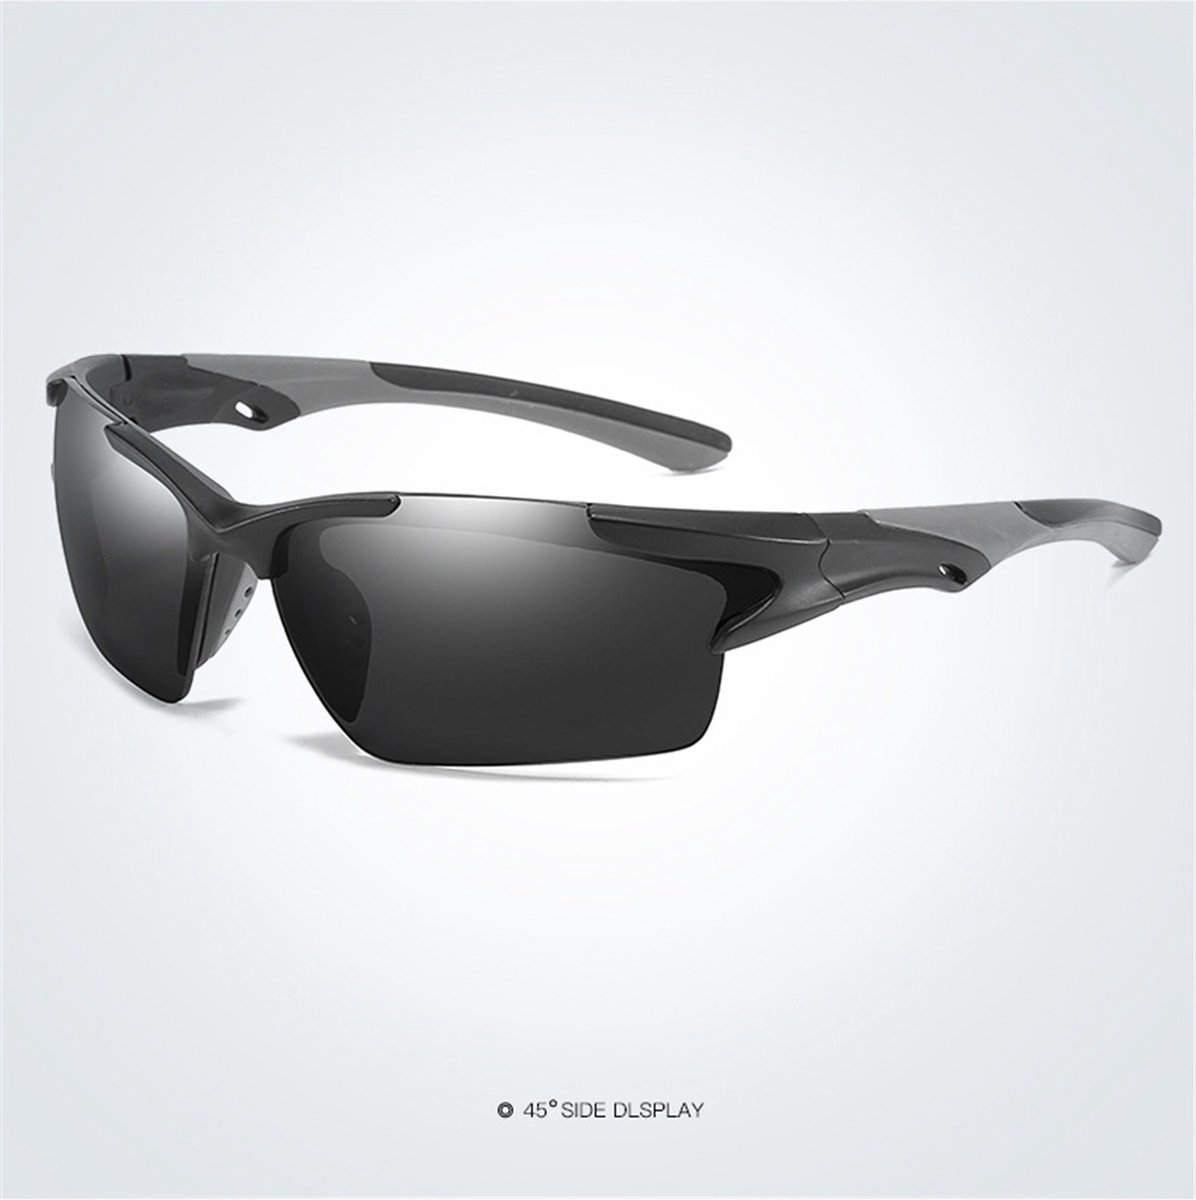 Soosie - Fietsbril - Sportbril - Gepolariseerde - UV Bescherming - Zwarte frame - Alle sporten - Uinisex - One size - GRATIS Brillenkoker